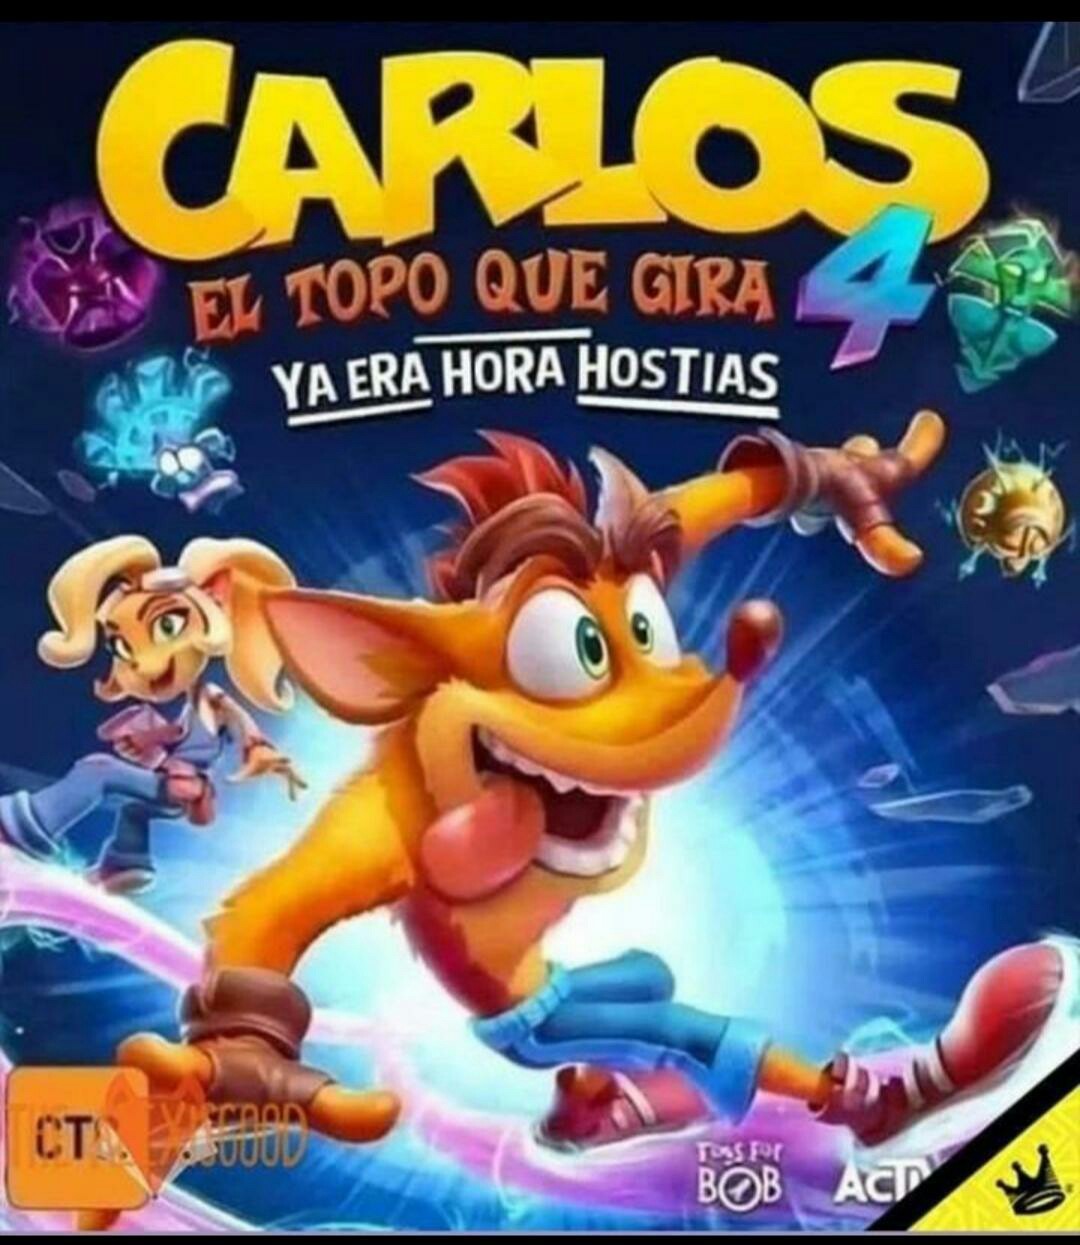 CARLOS - meme